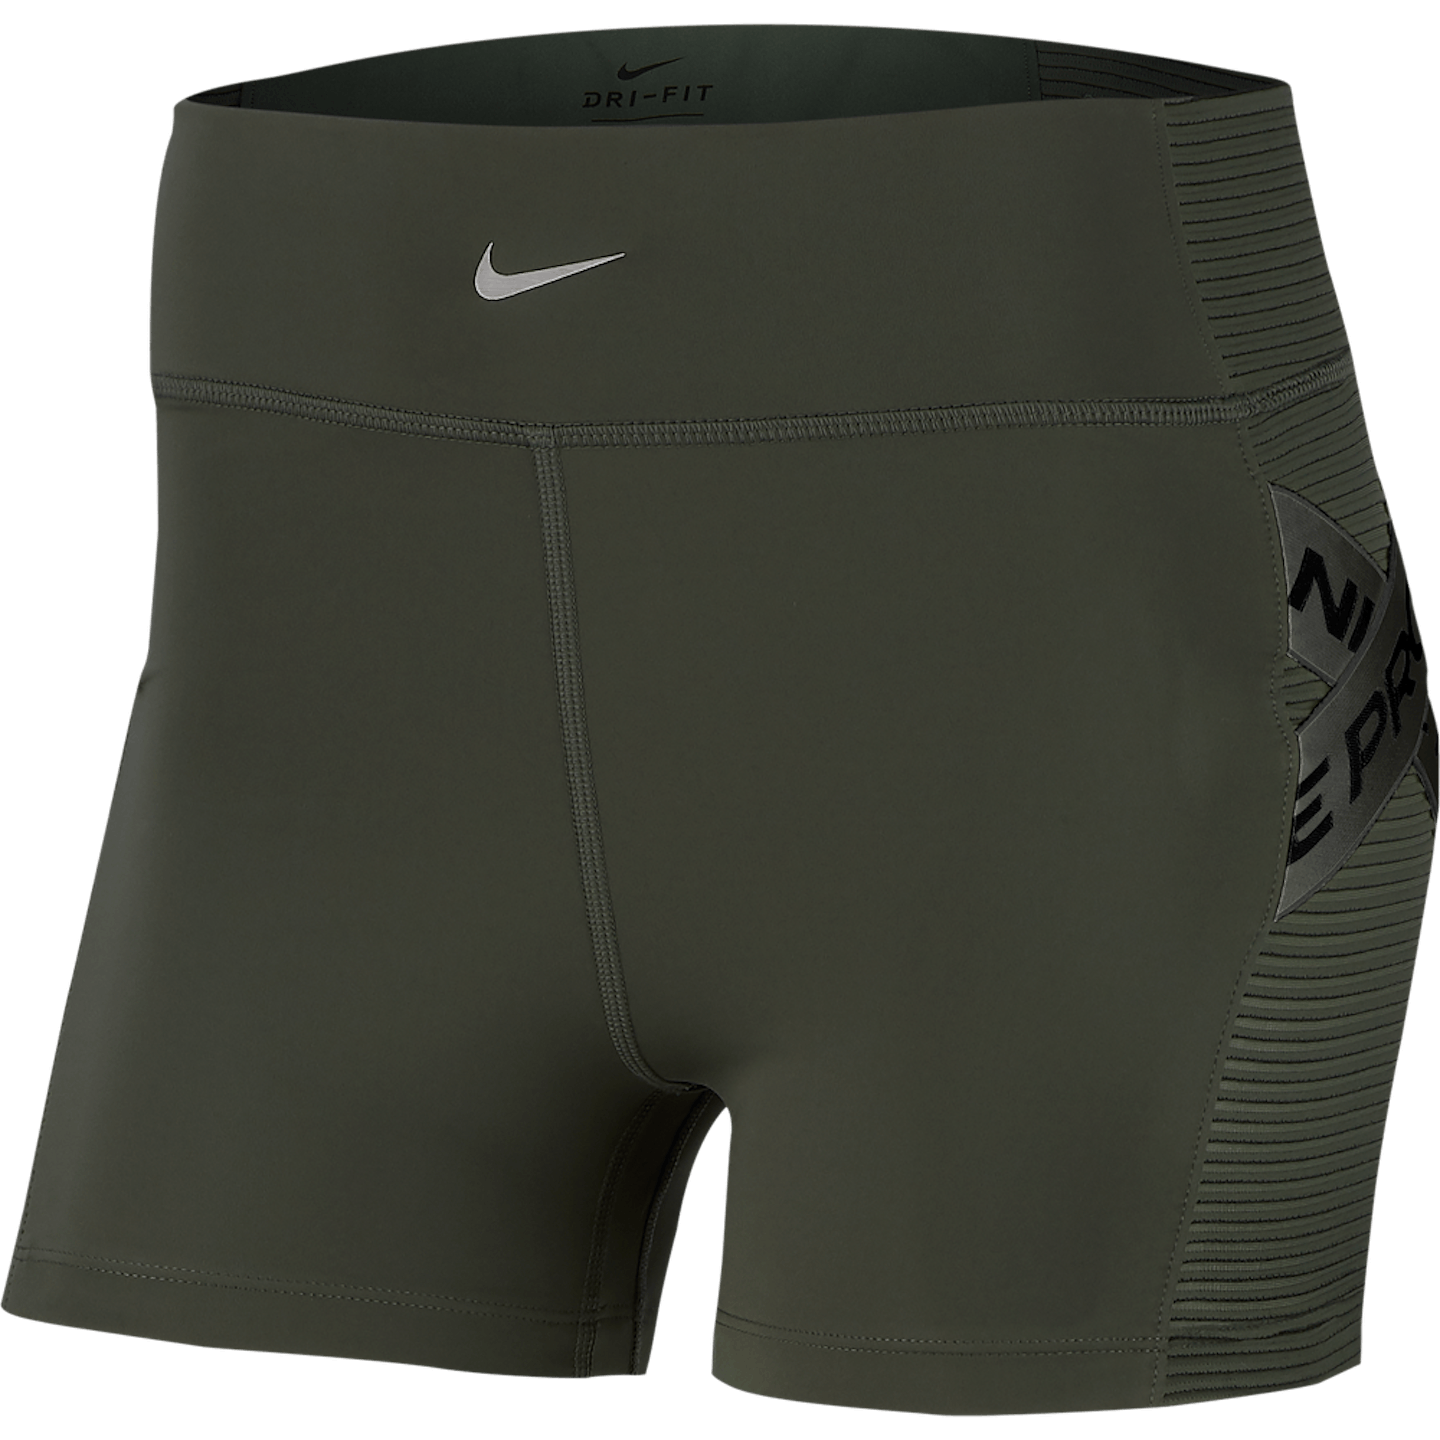 Nike Pro Shorts, £34.95